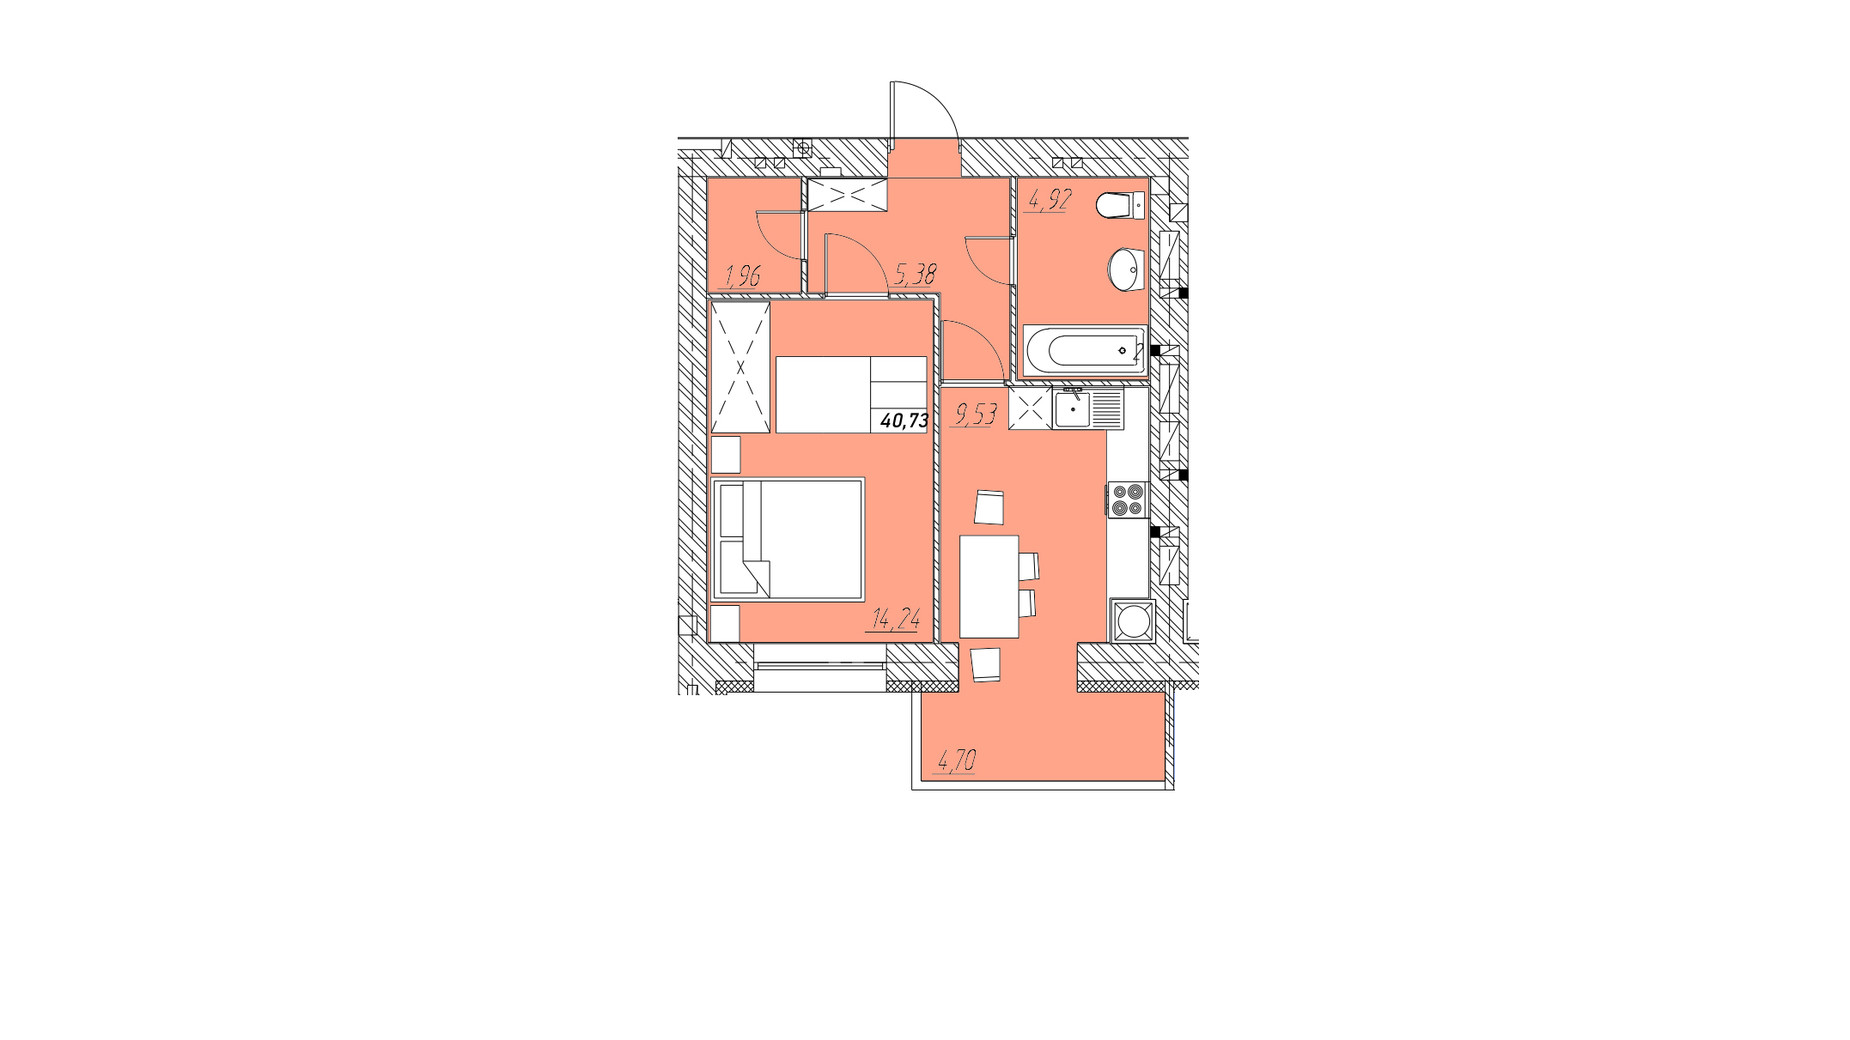 Планировка 1-комнатной квартиры в ЖК на Шептицкого 40.73 м², фото 662374